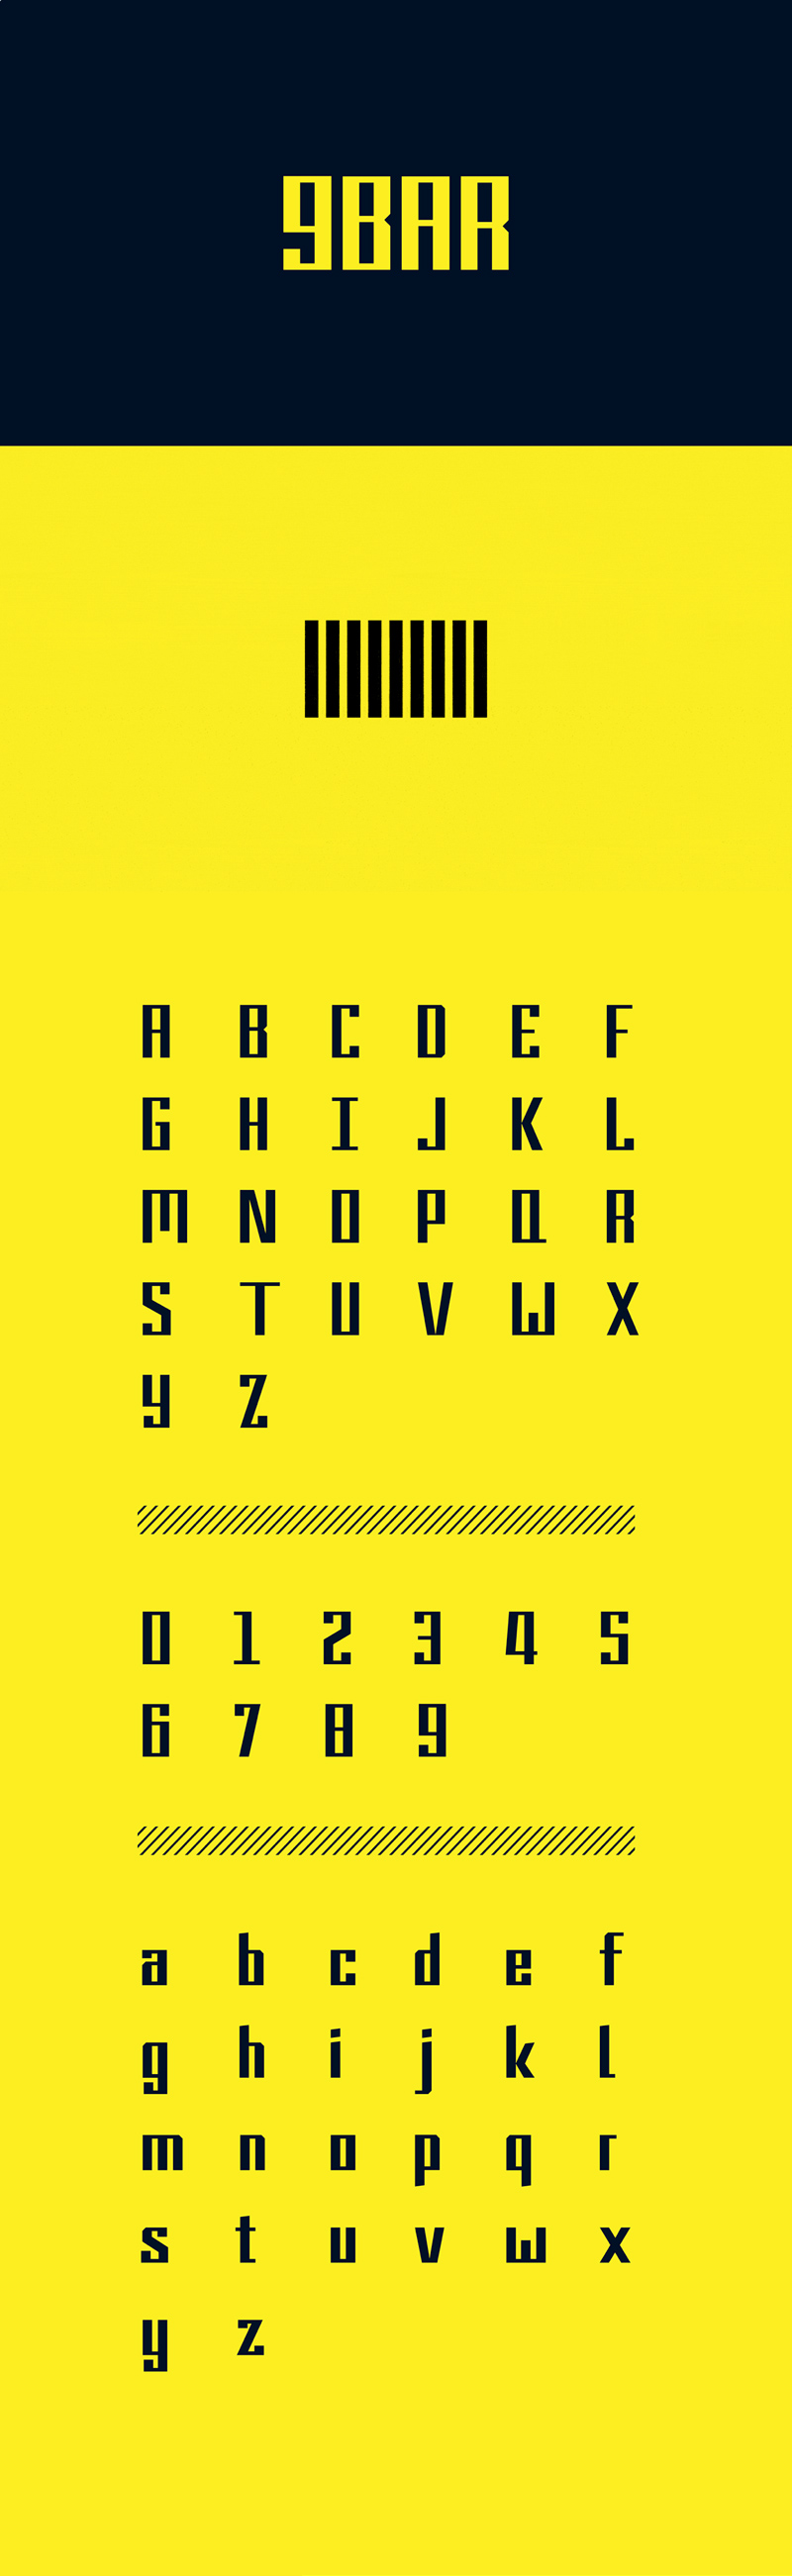 9BAR Font - бесплатный шрифт